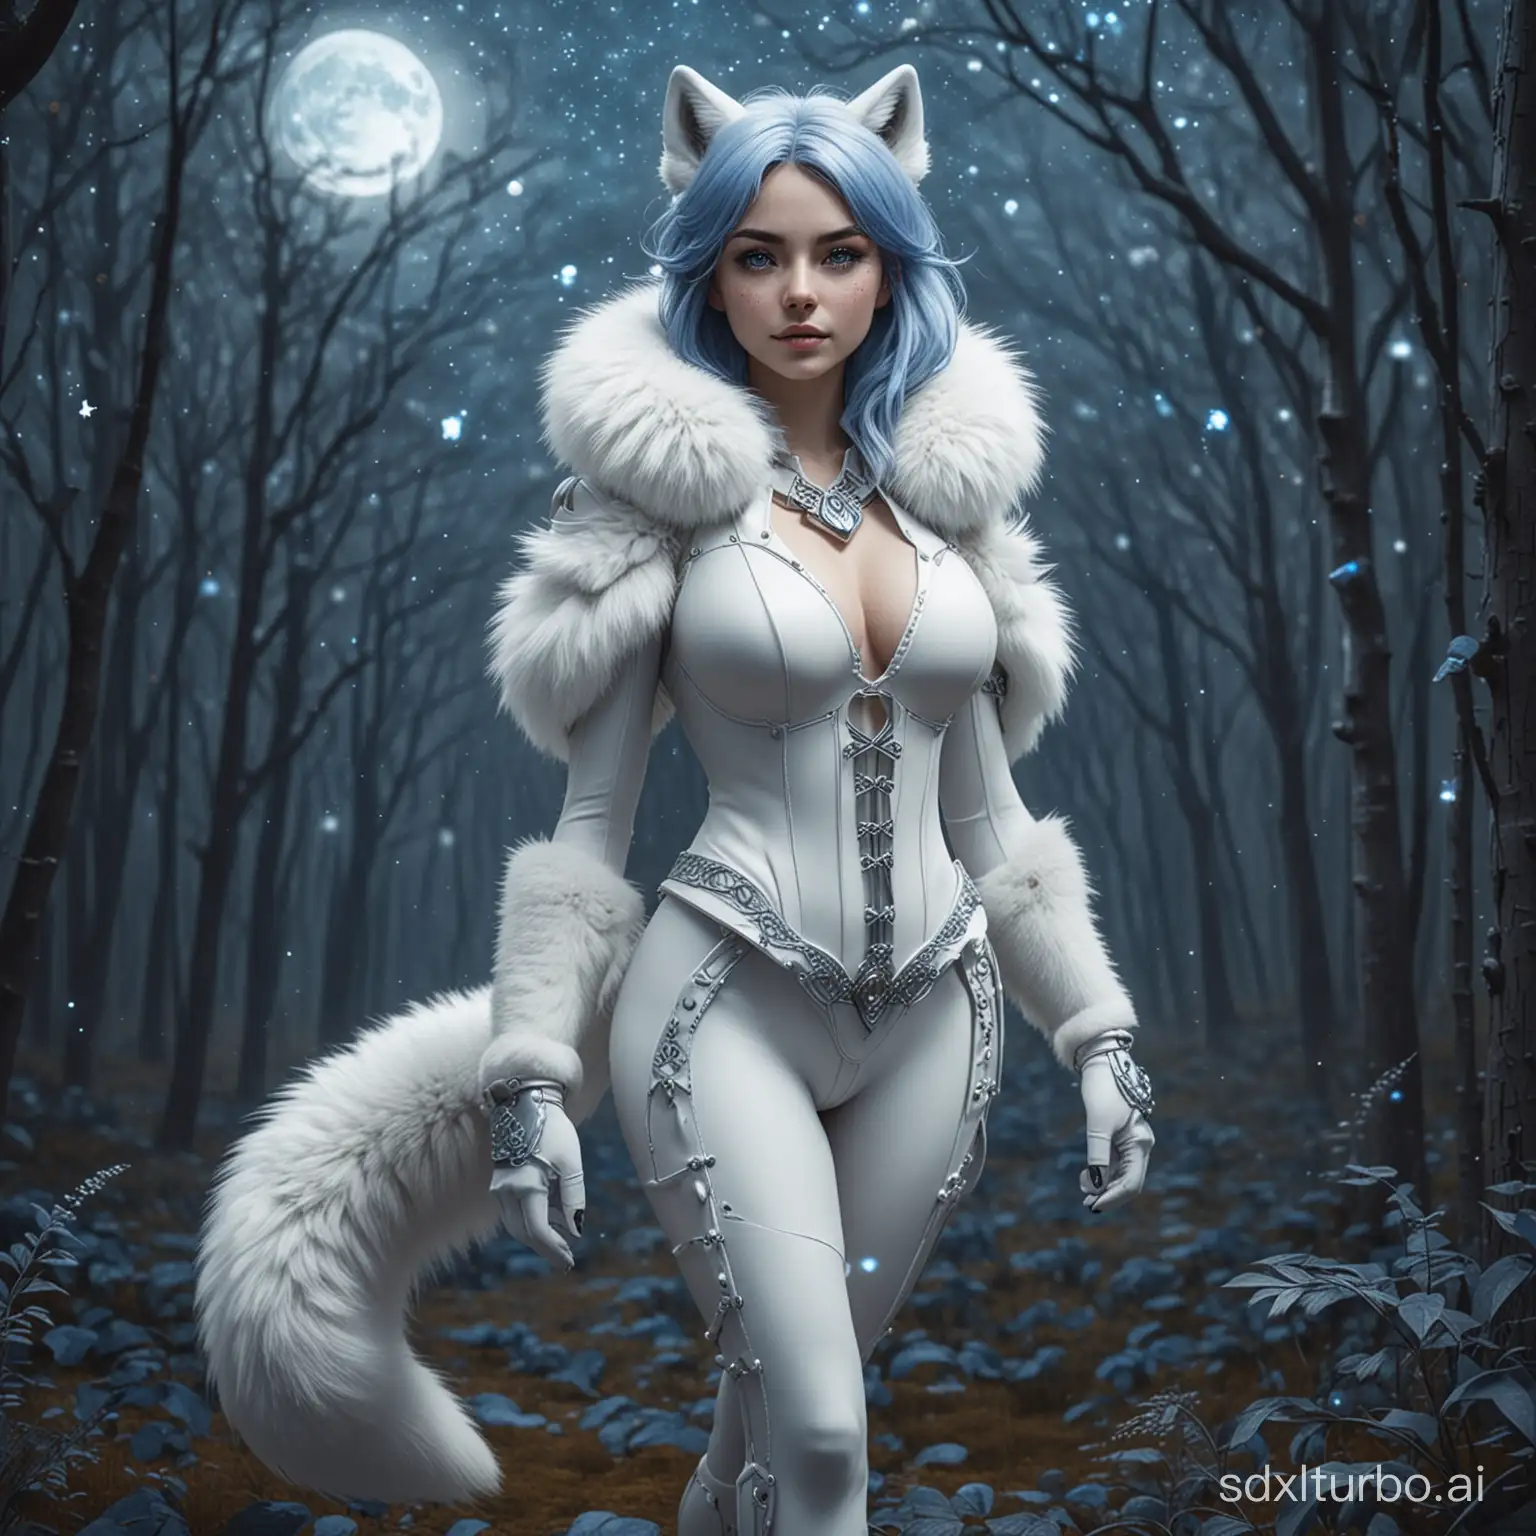 Arctic-Fox-Anthro-Female-in-Moonlit-Fantasy-Forest